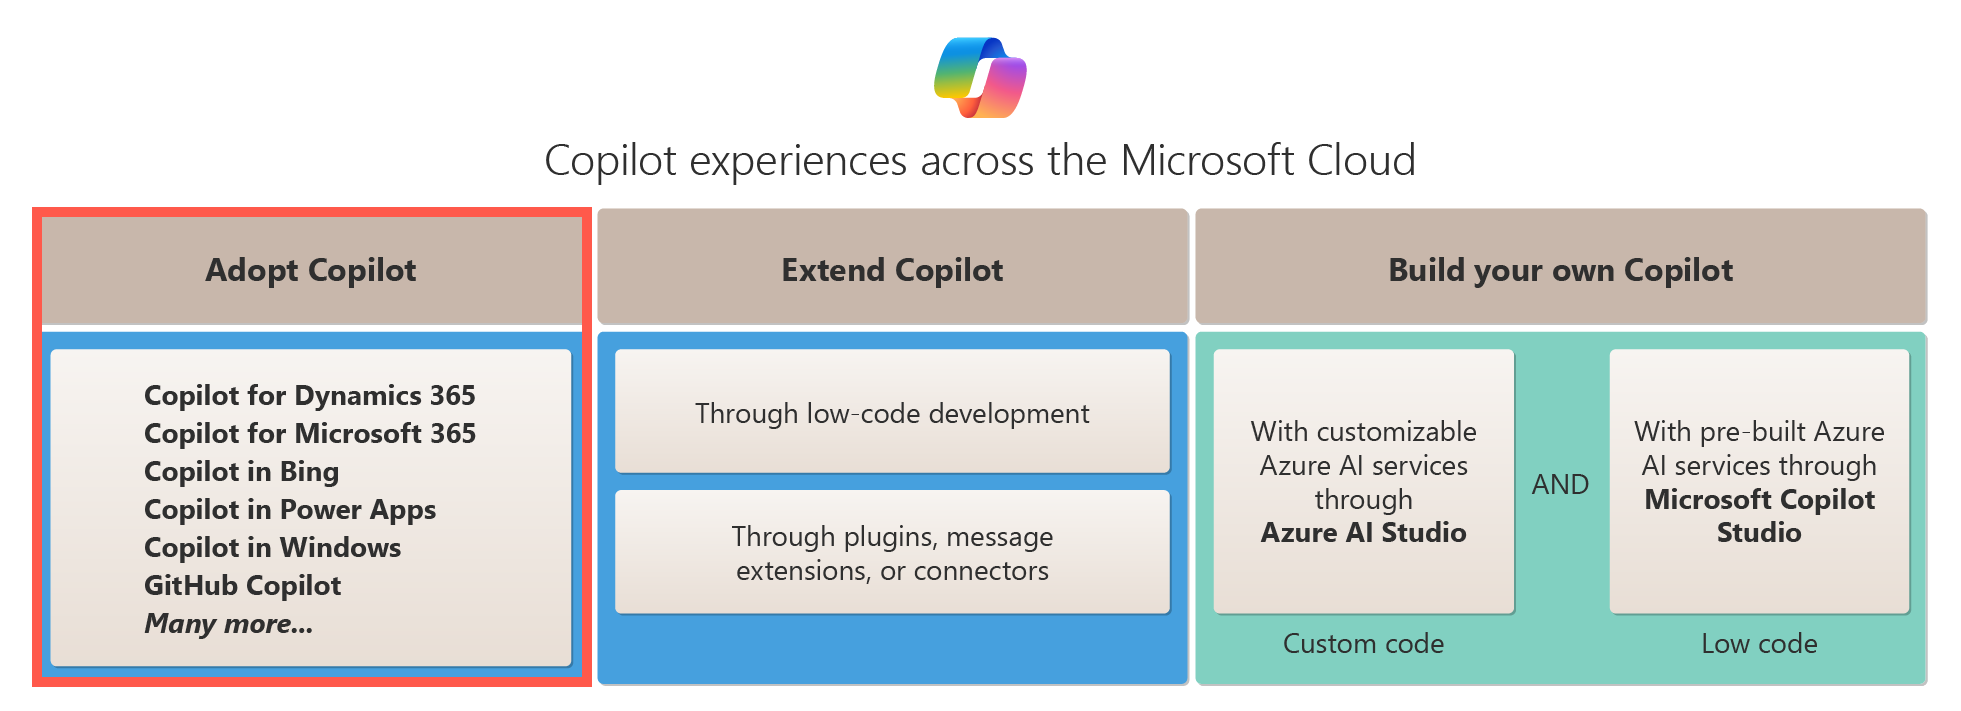 此圖顯示跨 Microsoft Cloud 的 Copilot 採用選項。